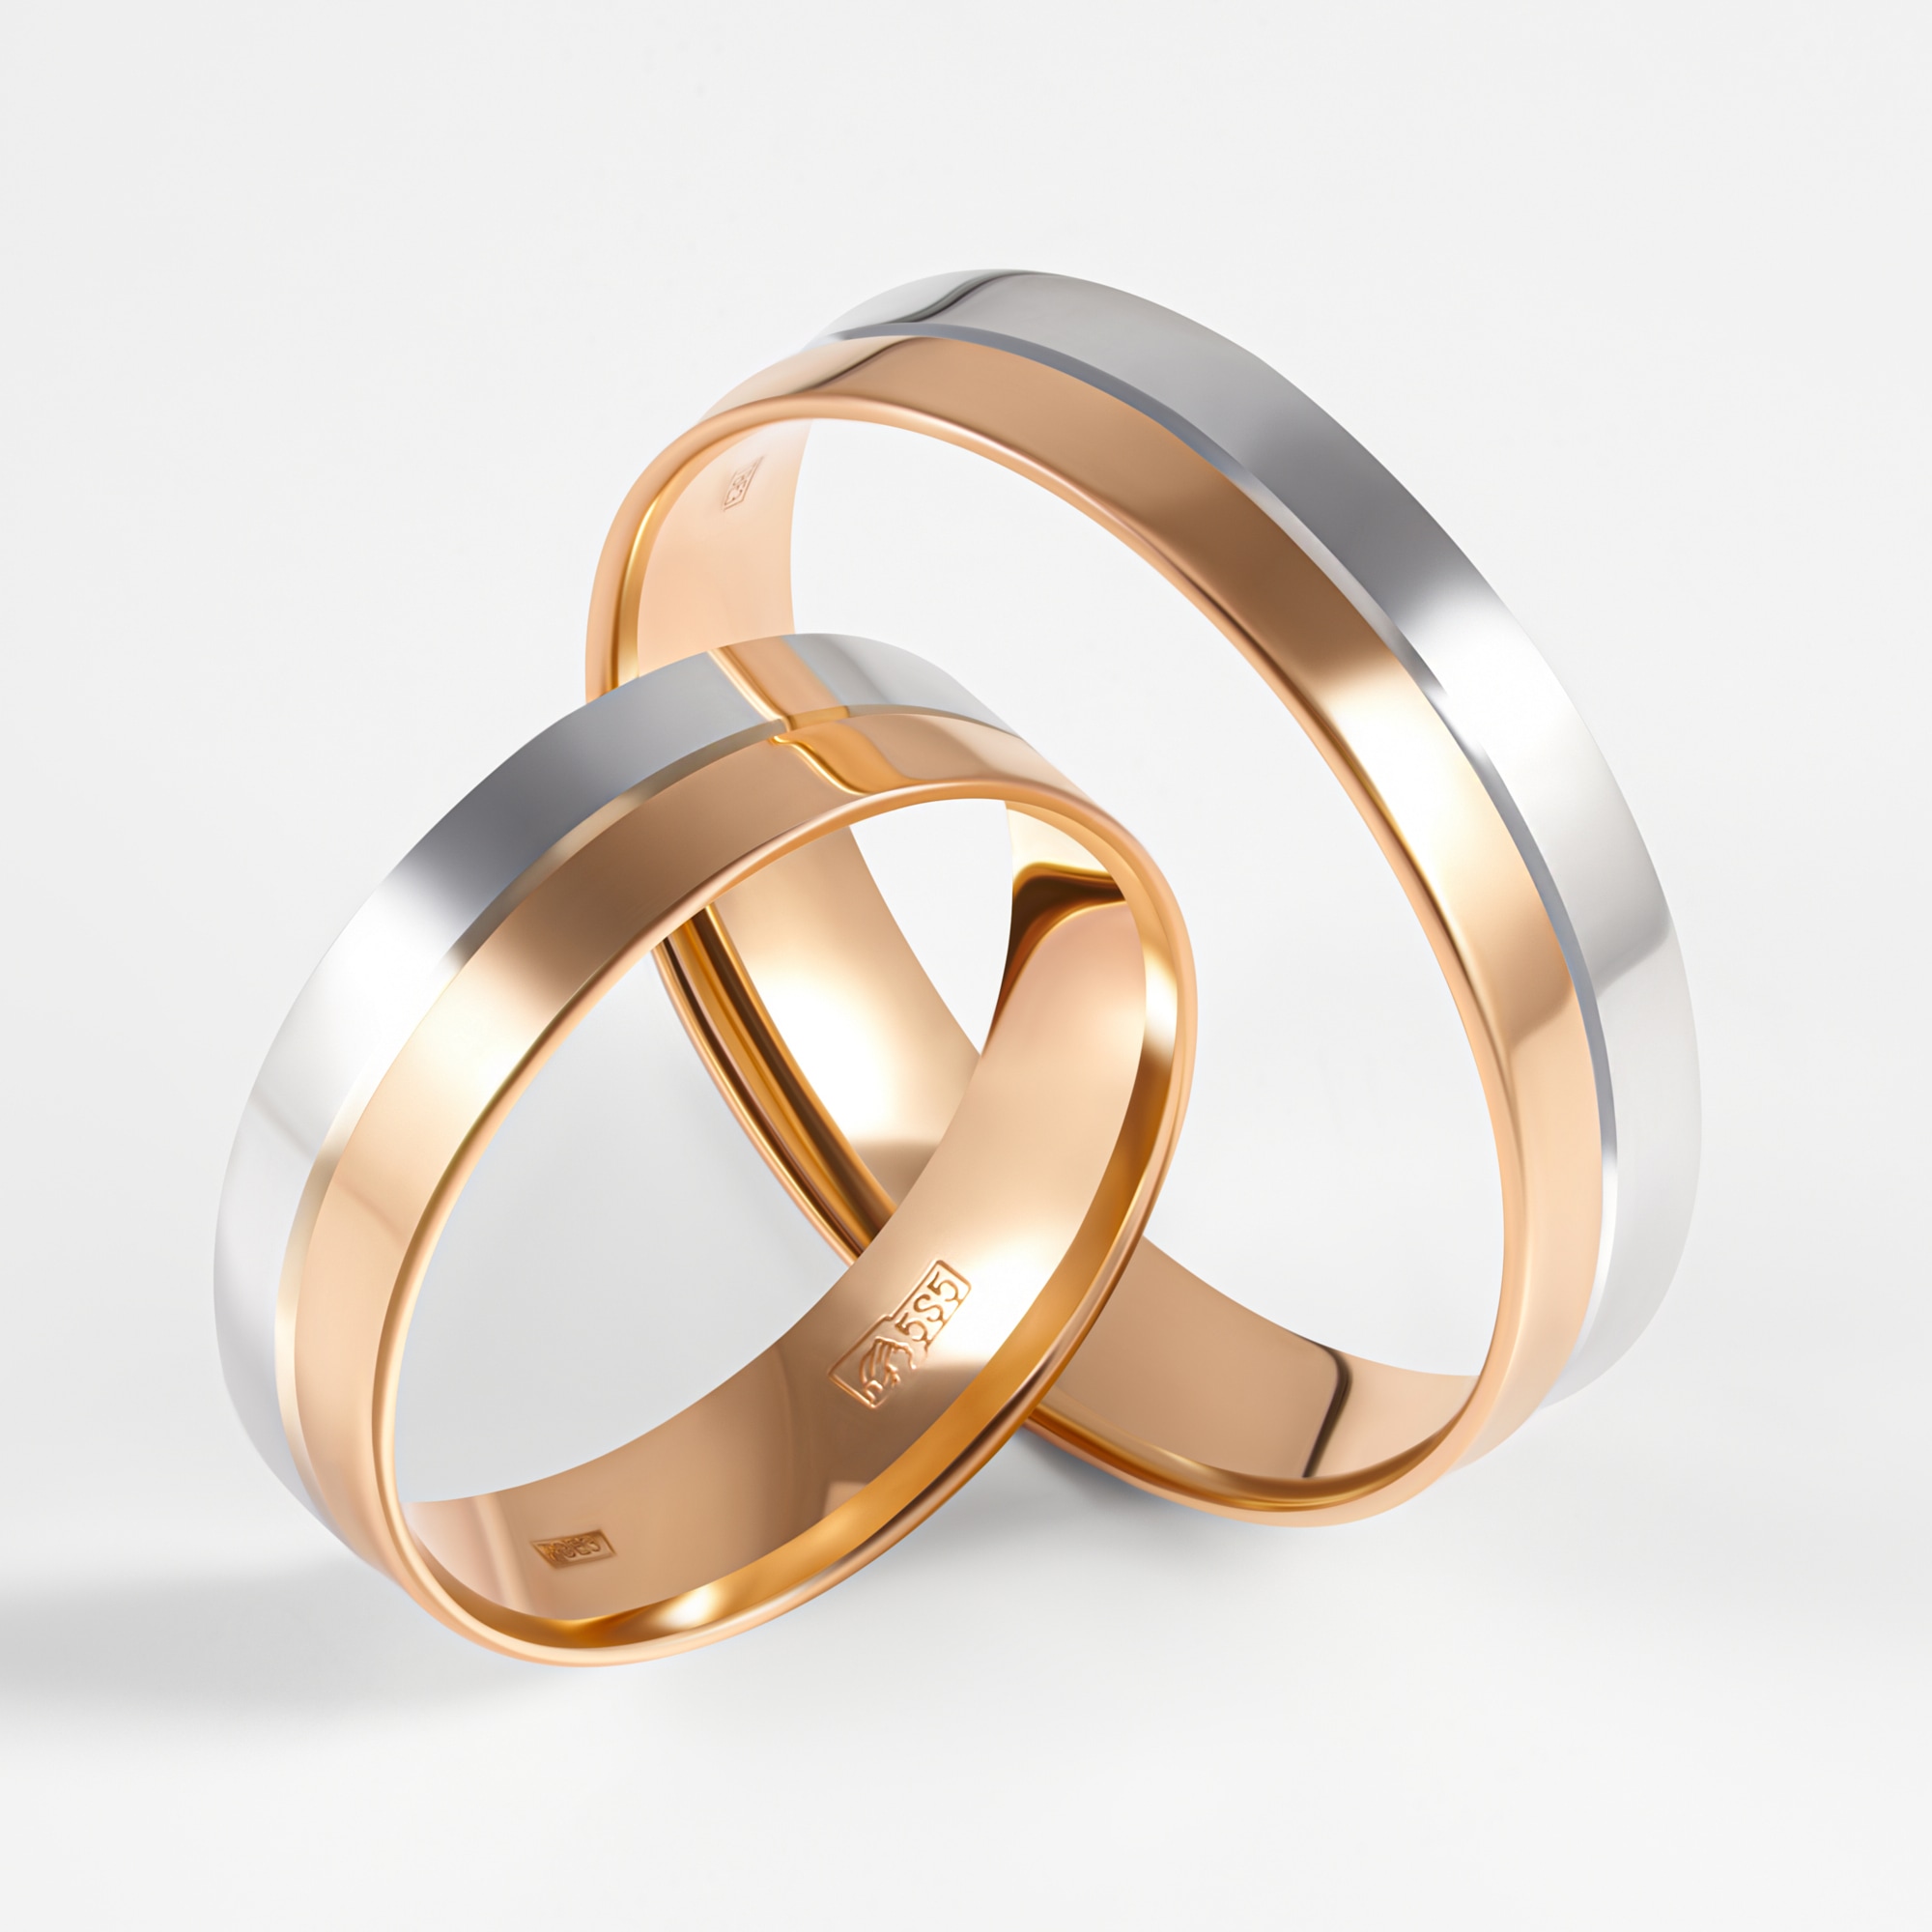 Как обручальные кольца в моде? Самые популярные модели свадебных колец